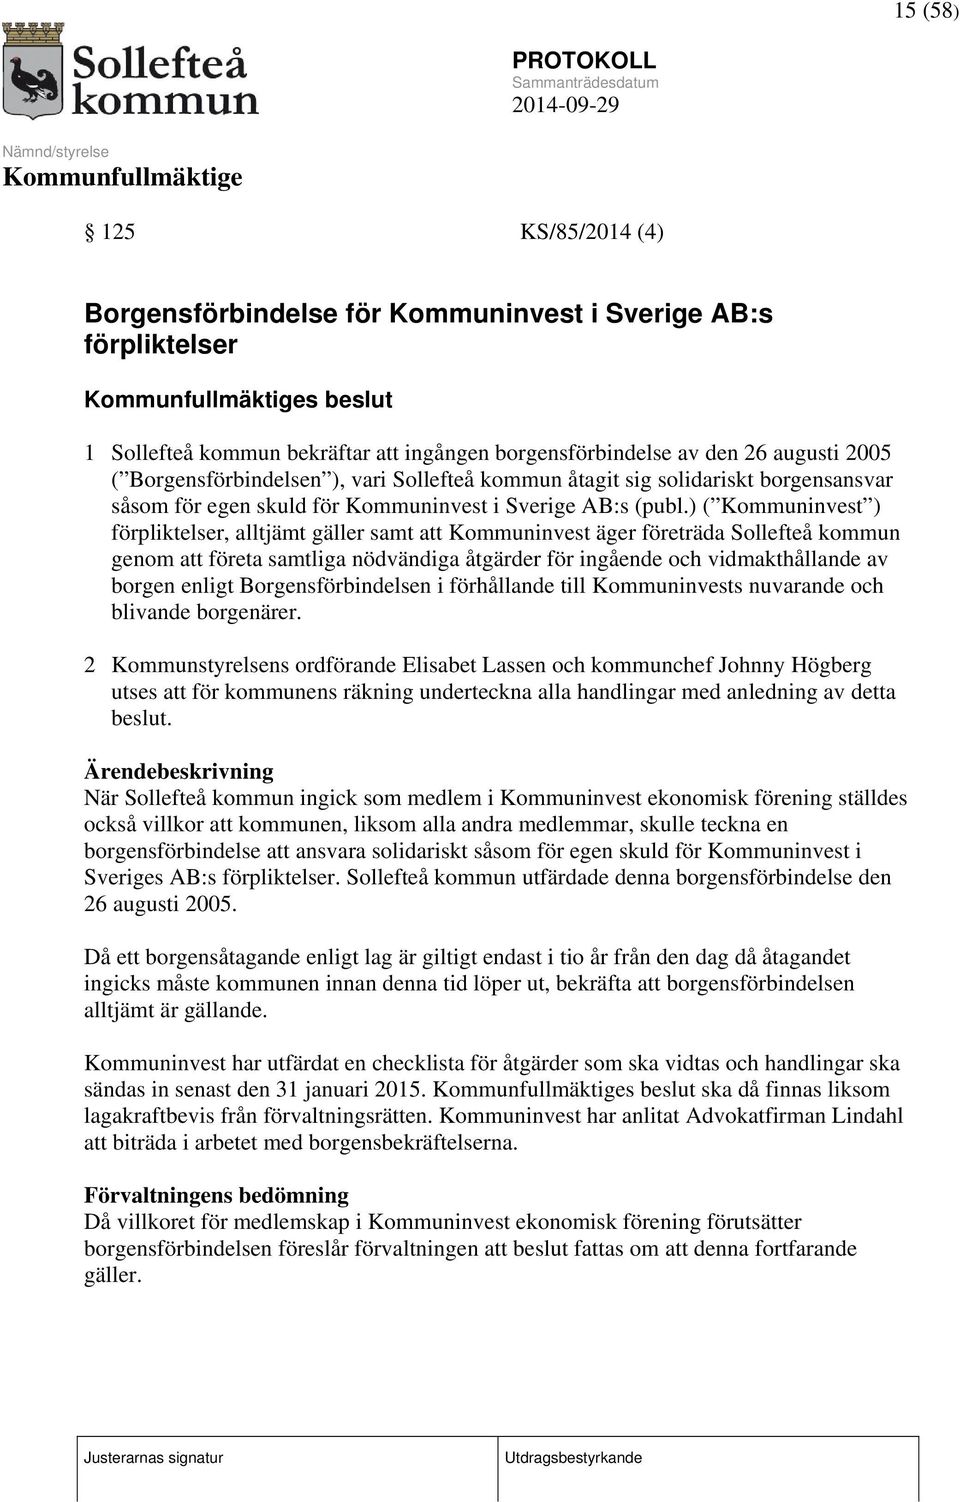 ) ( Kommuninvest ) förpliktelser, alltjämt gäller samt att Kommuninvest äger företräda Sollefteå kommun genom att företa samtliga nödvändiga åtgärder för ingående och vidmakthållande av borgen enligt